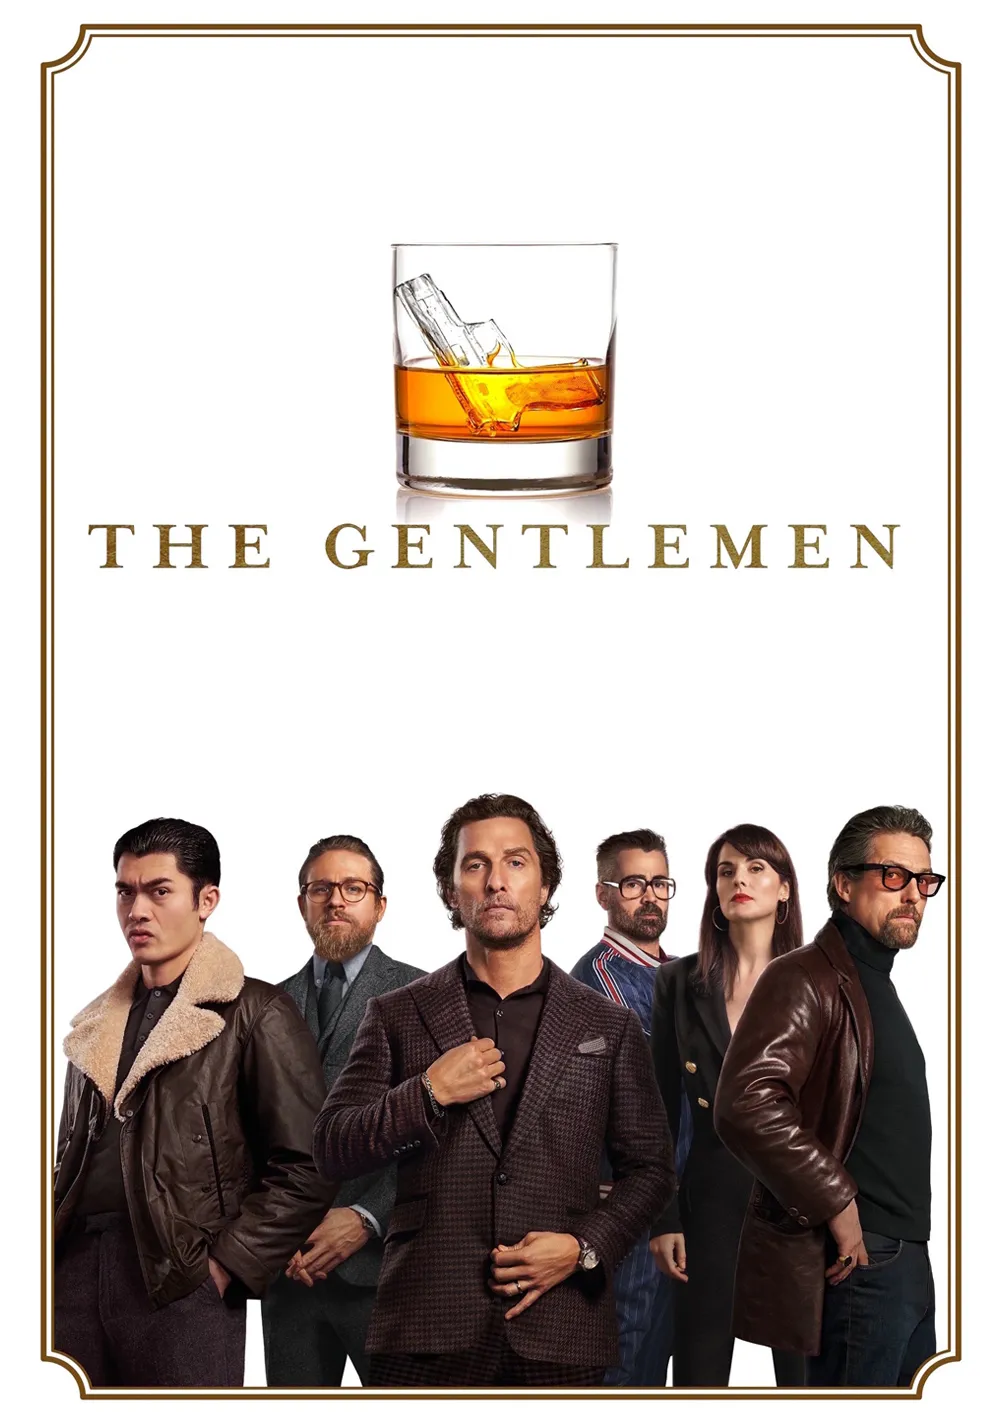 7 days of film: the gentlemen (2019)